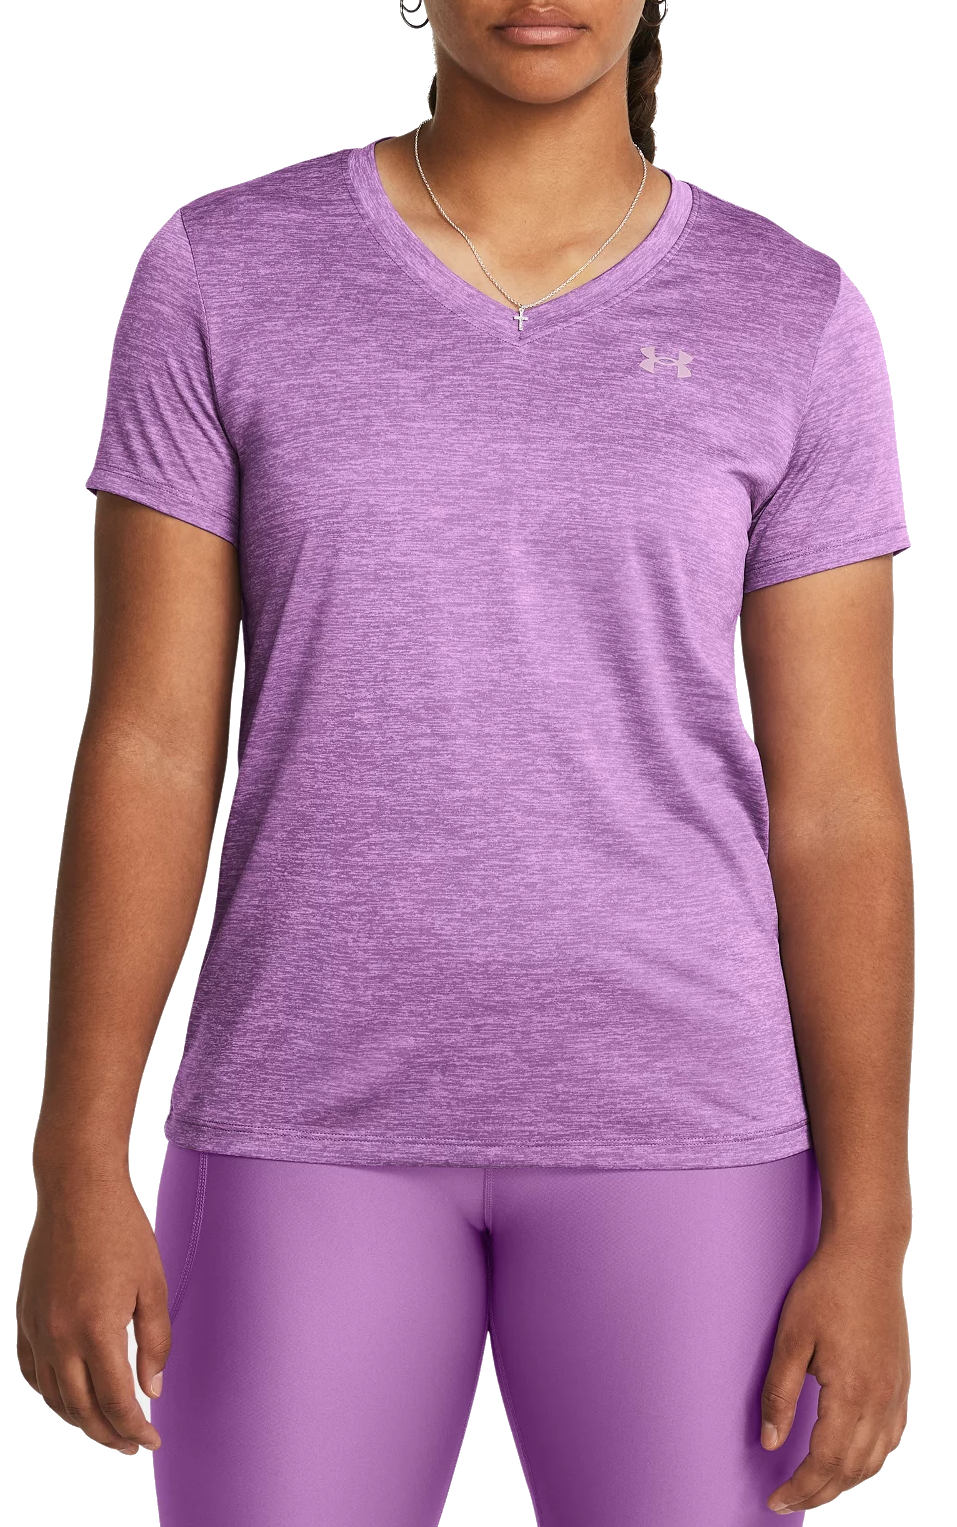 Under Armour Women's Tech V-Neck Short-Sleeve T-Shirt